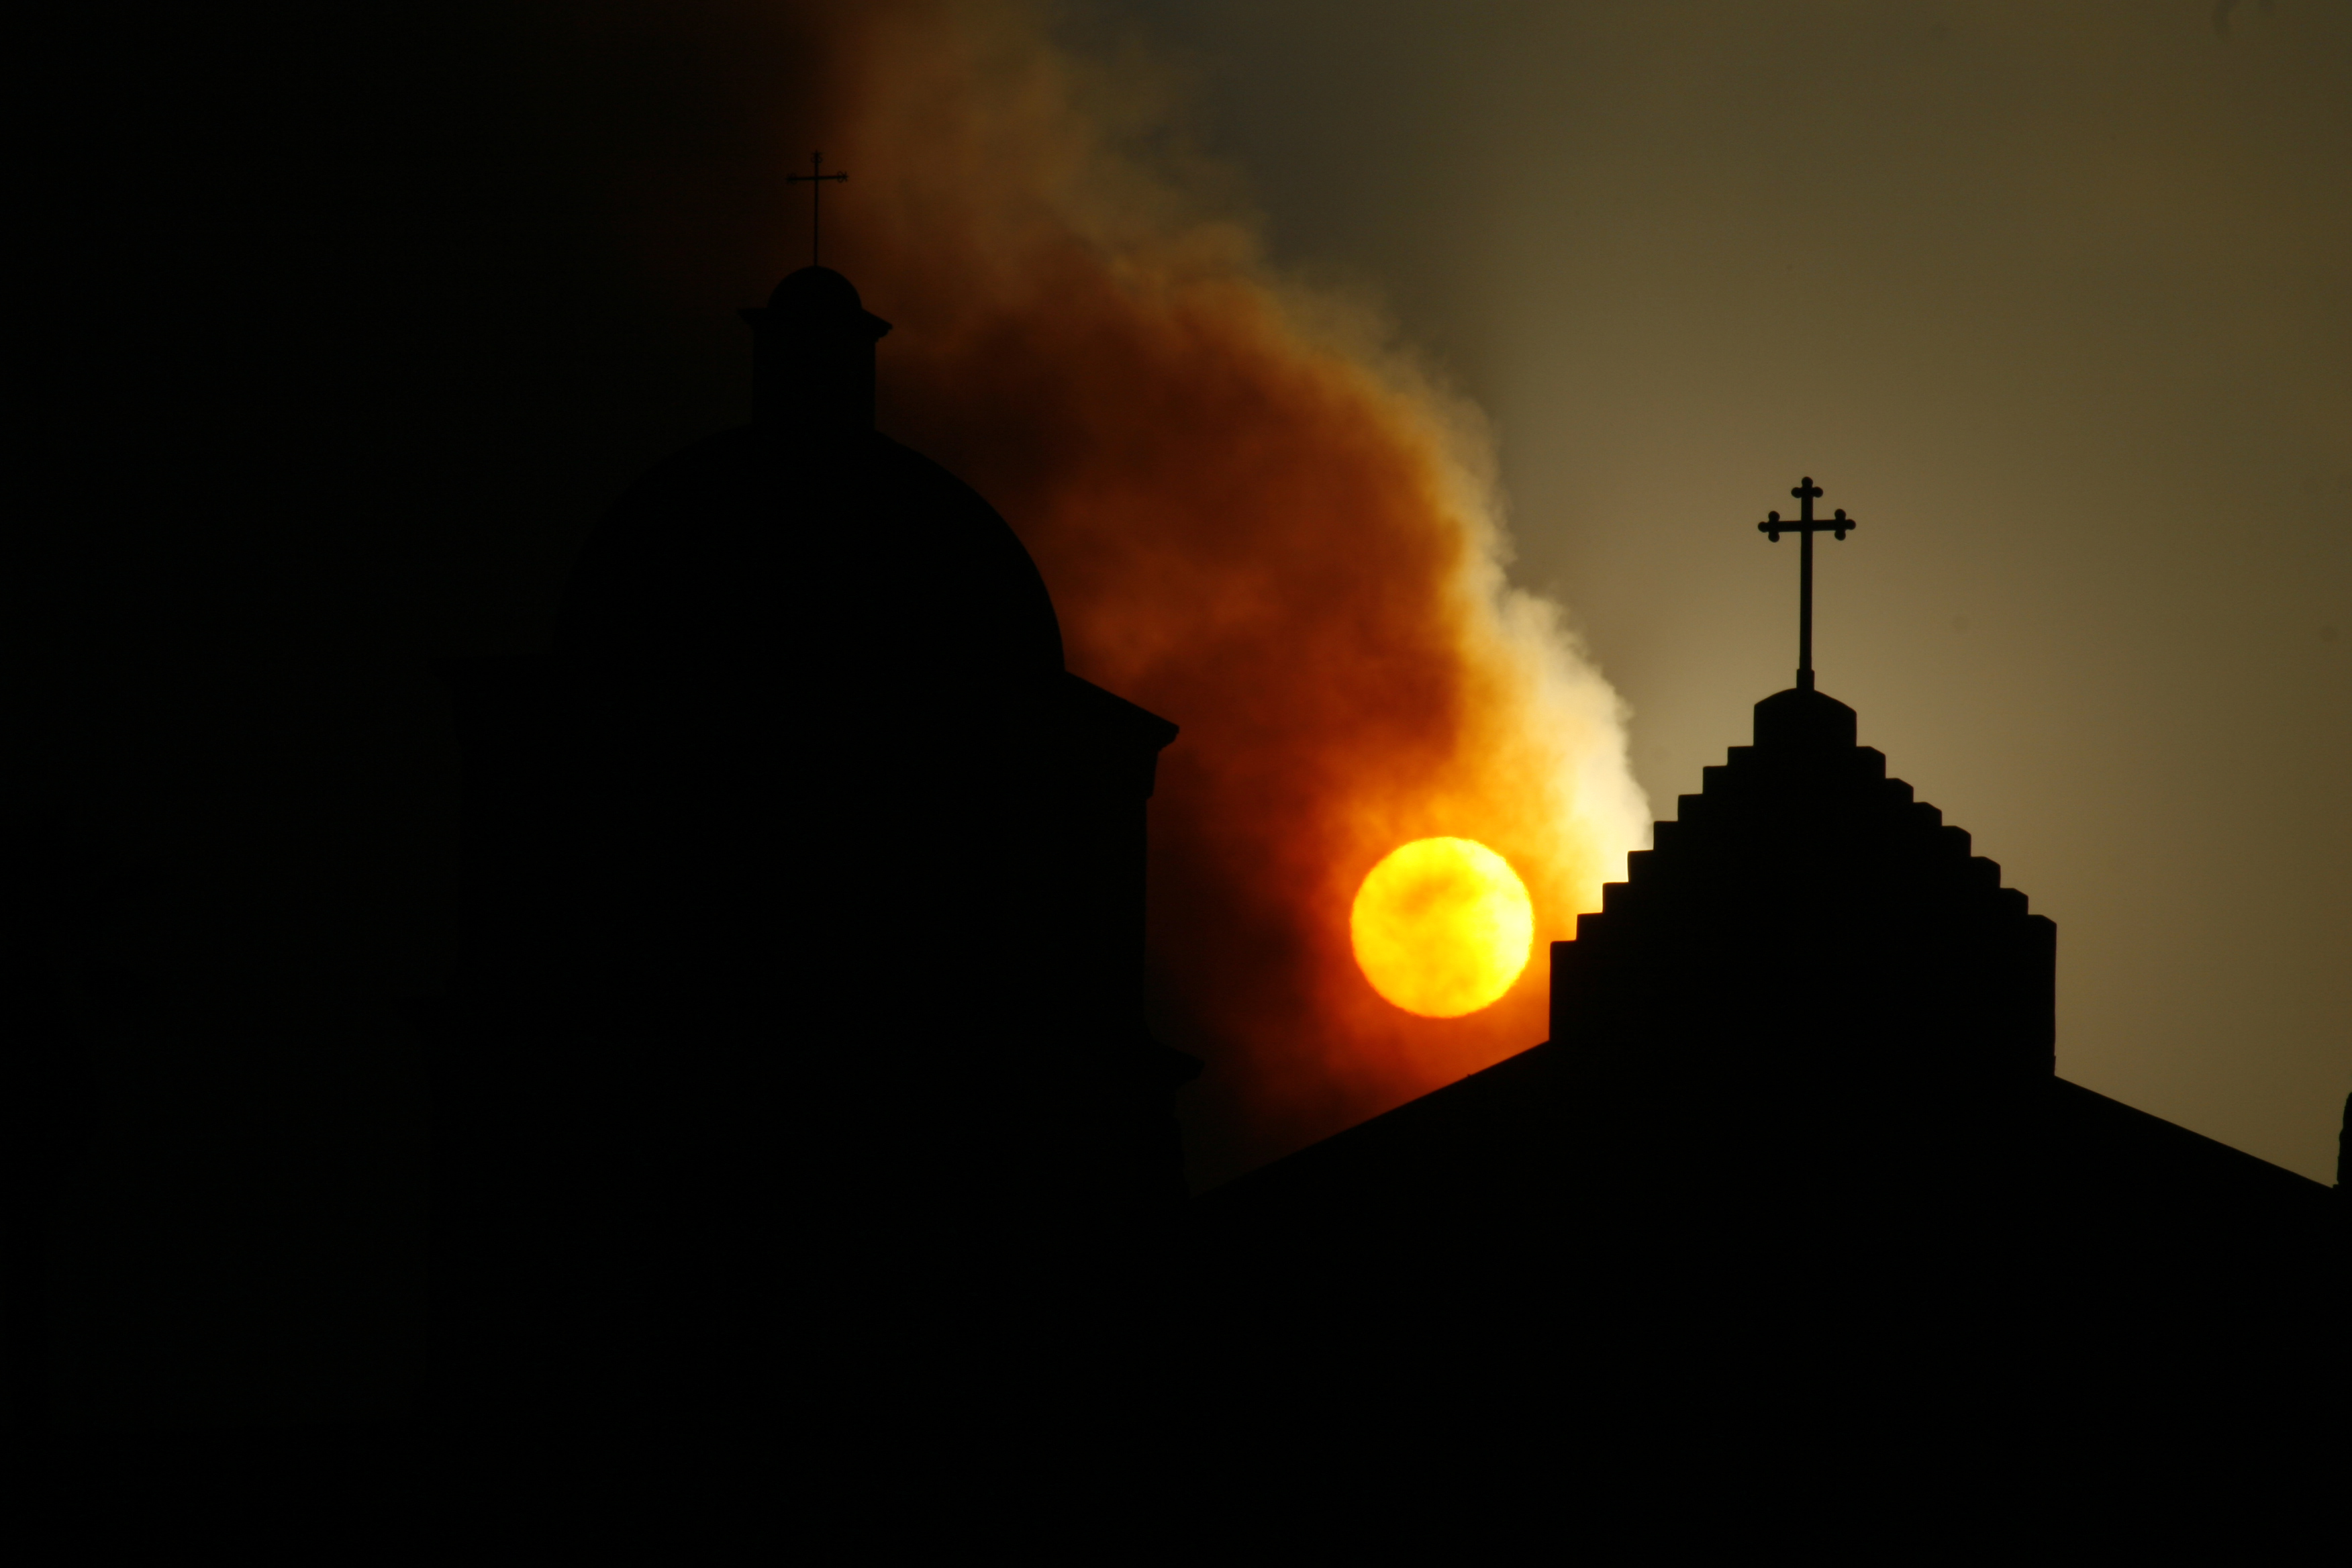 フリー画像 人工風景 建造物 建築物 教会 聖堂 十字架 シルエット 夕日 夕焼け 夕暮れ 黒色 ブラック フリー素材 画像素材なら 無料 フリー写真 素材のフリーフォト